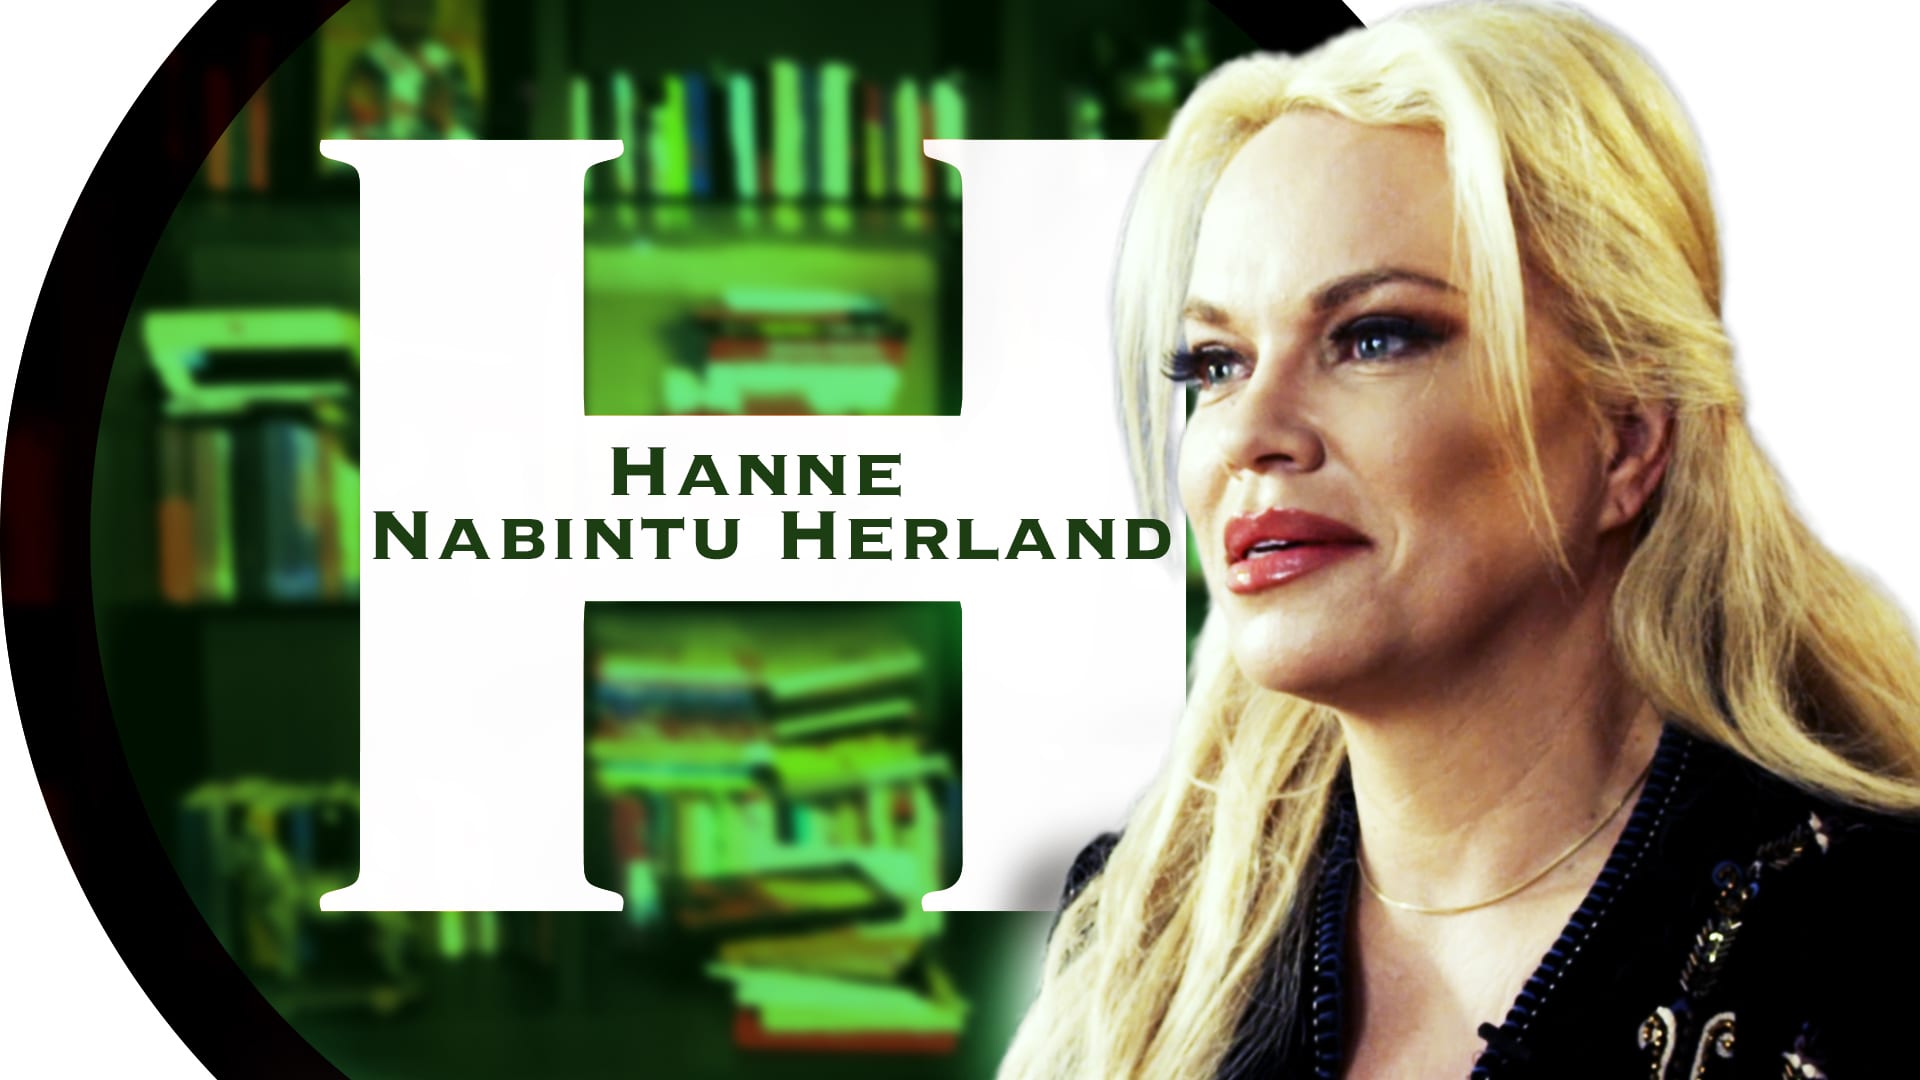 Hanne Nabintu Herland Report endorsed by Paul Craig Roberts